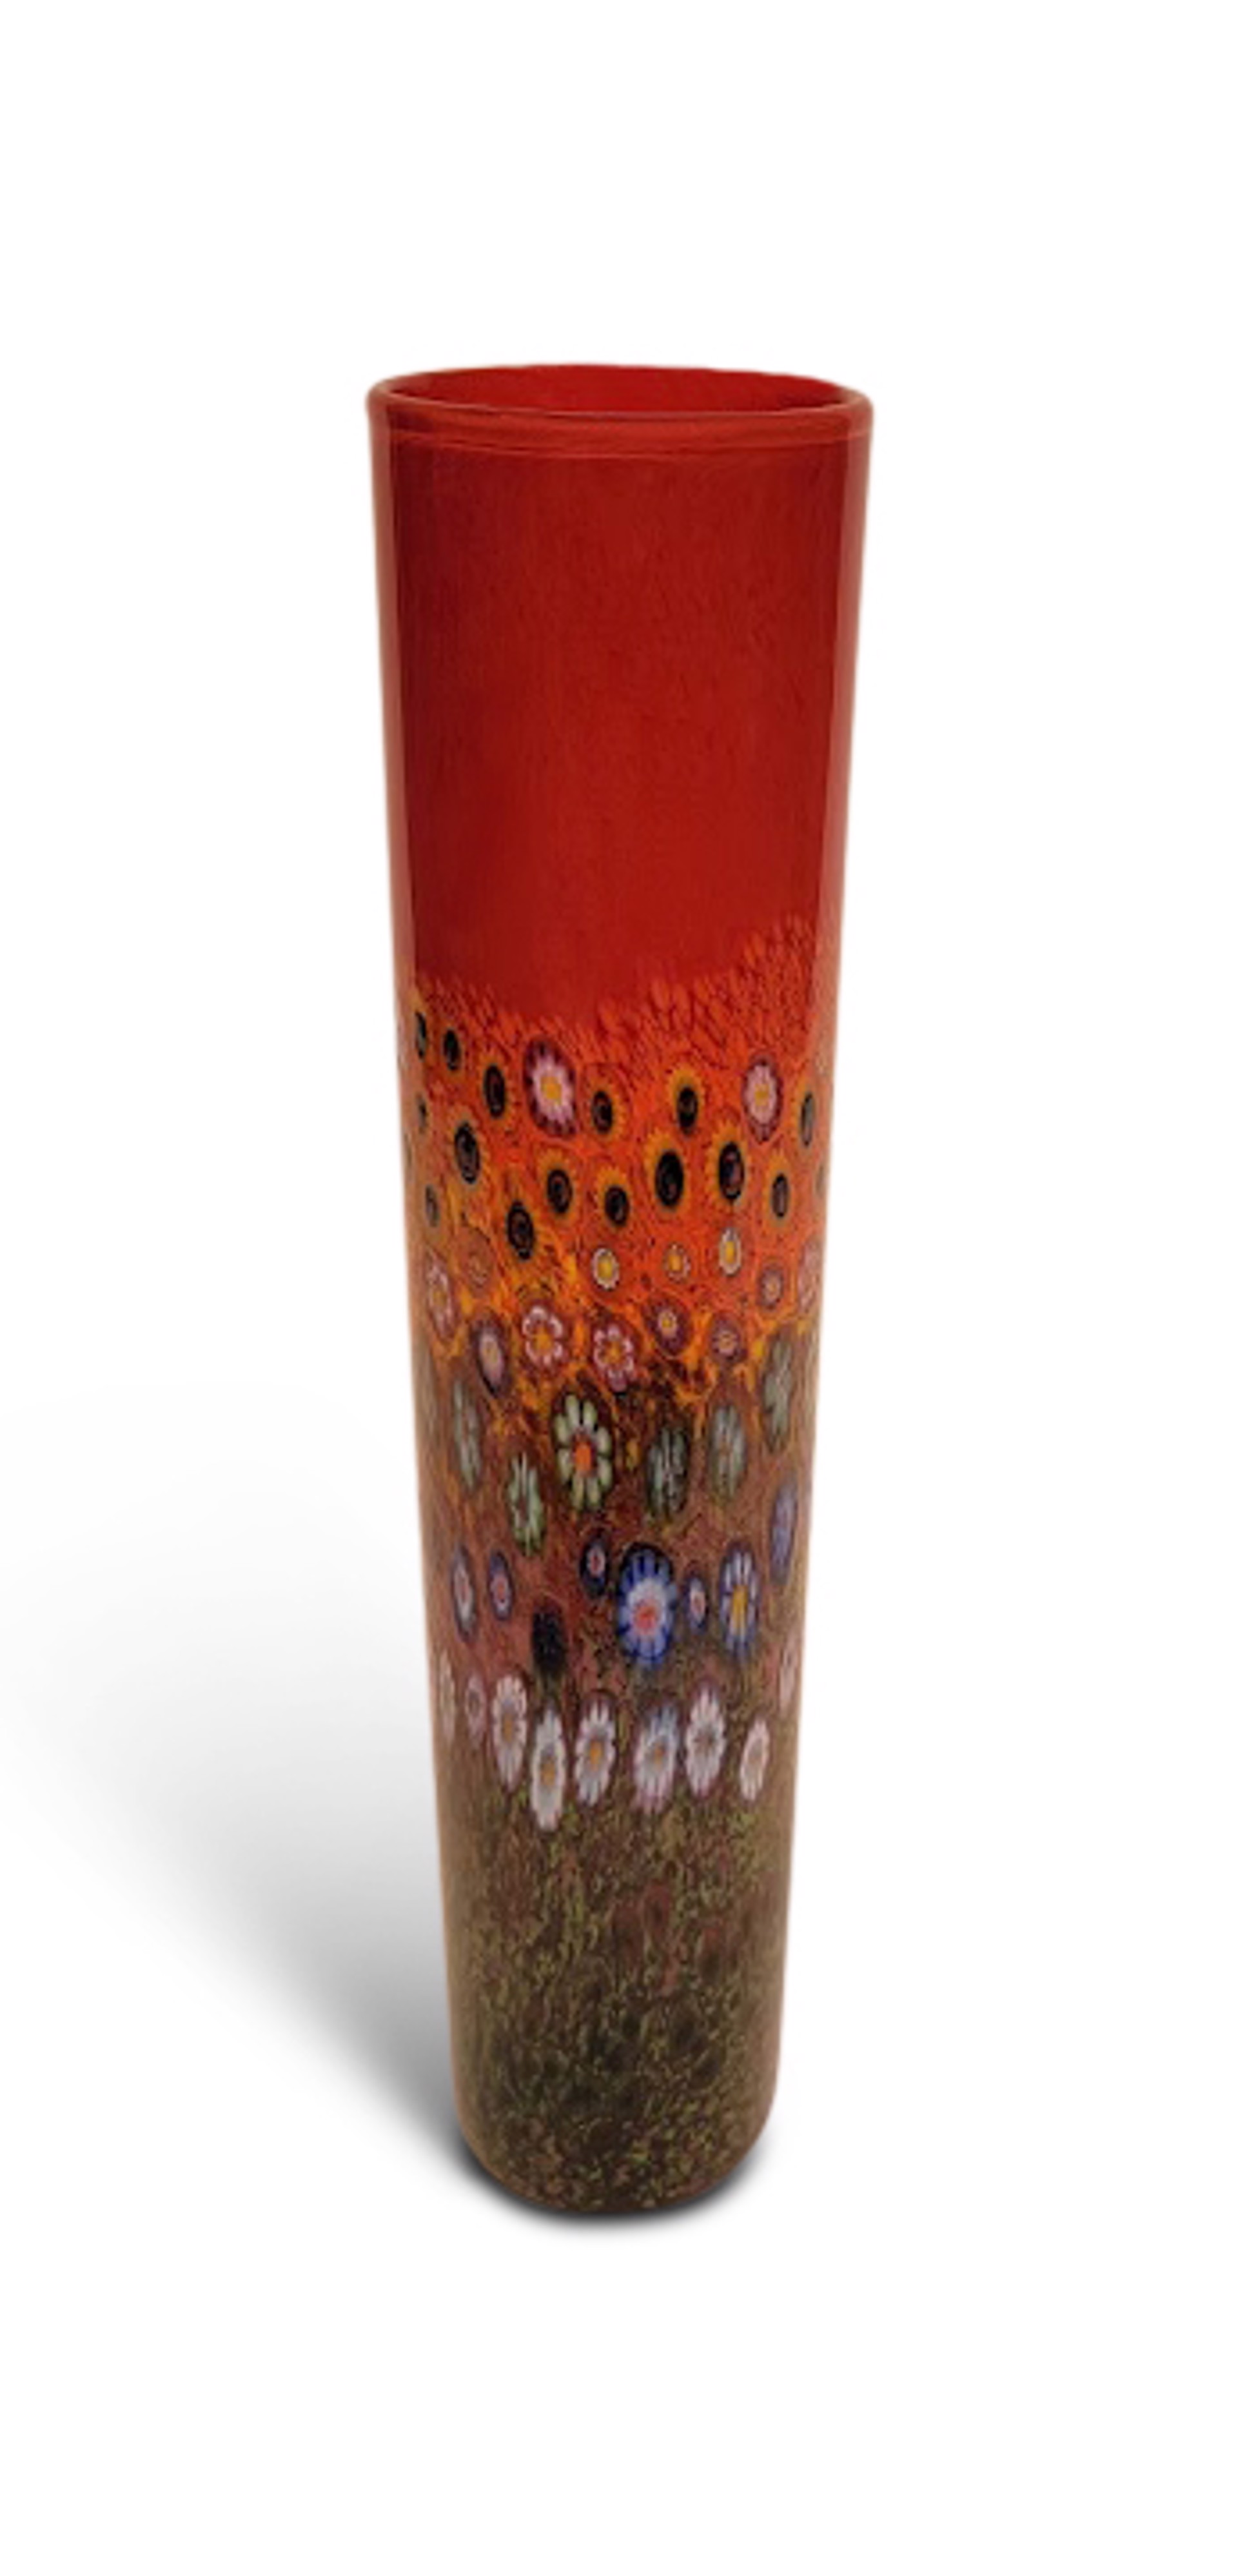 Small Garden Cylinder (Red) by Ken Hanson & Ingrid Hanson